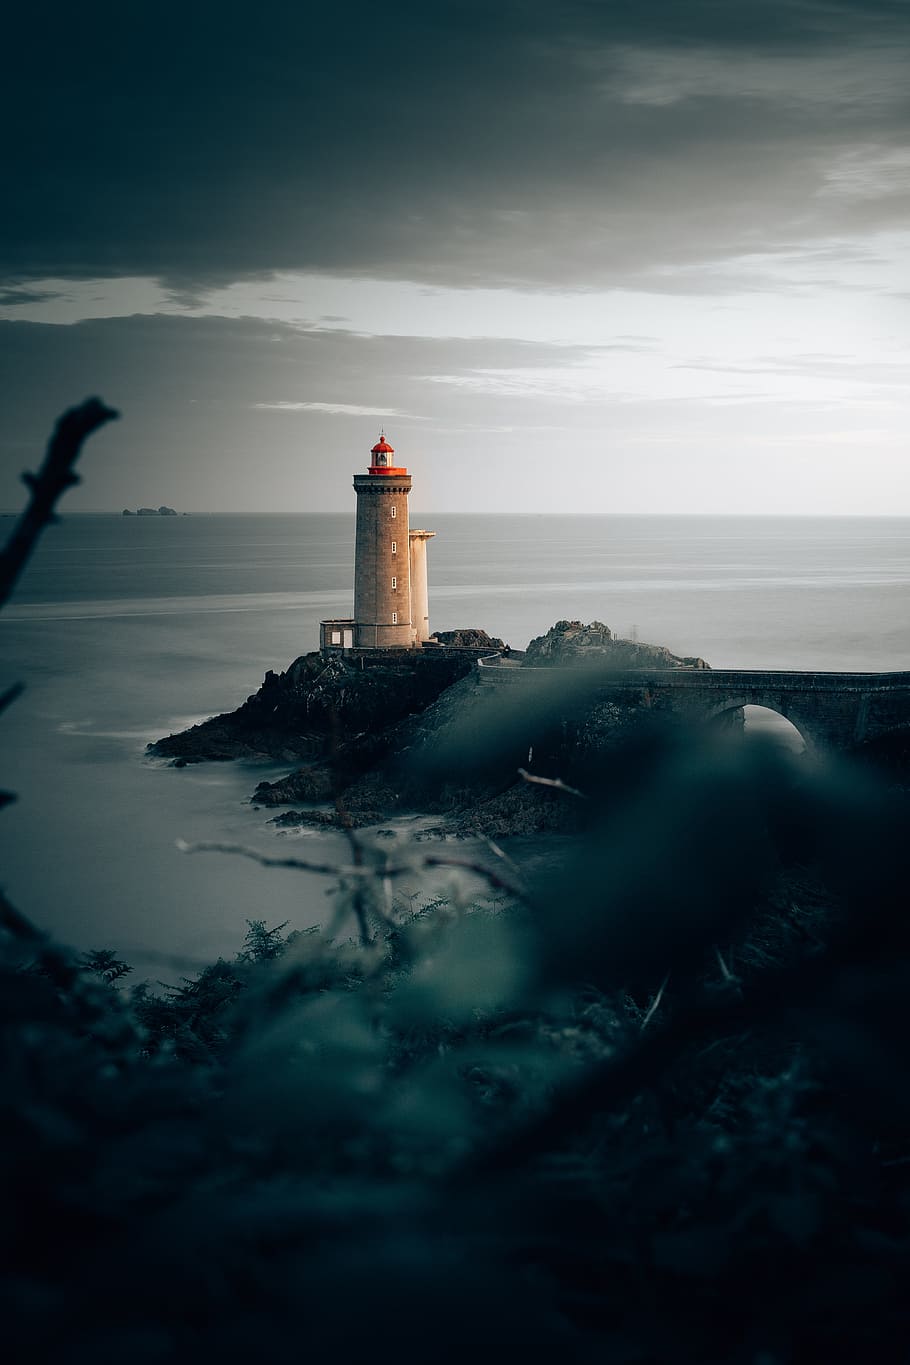 brown lighthouse, rock, cloud, shore, coast, sea, ocean, shipping